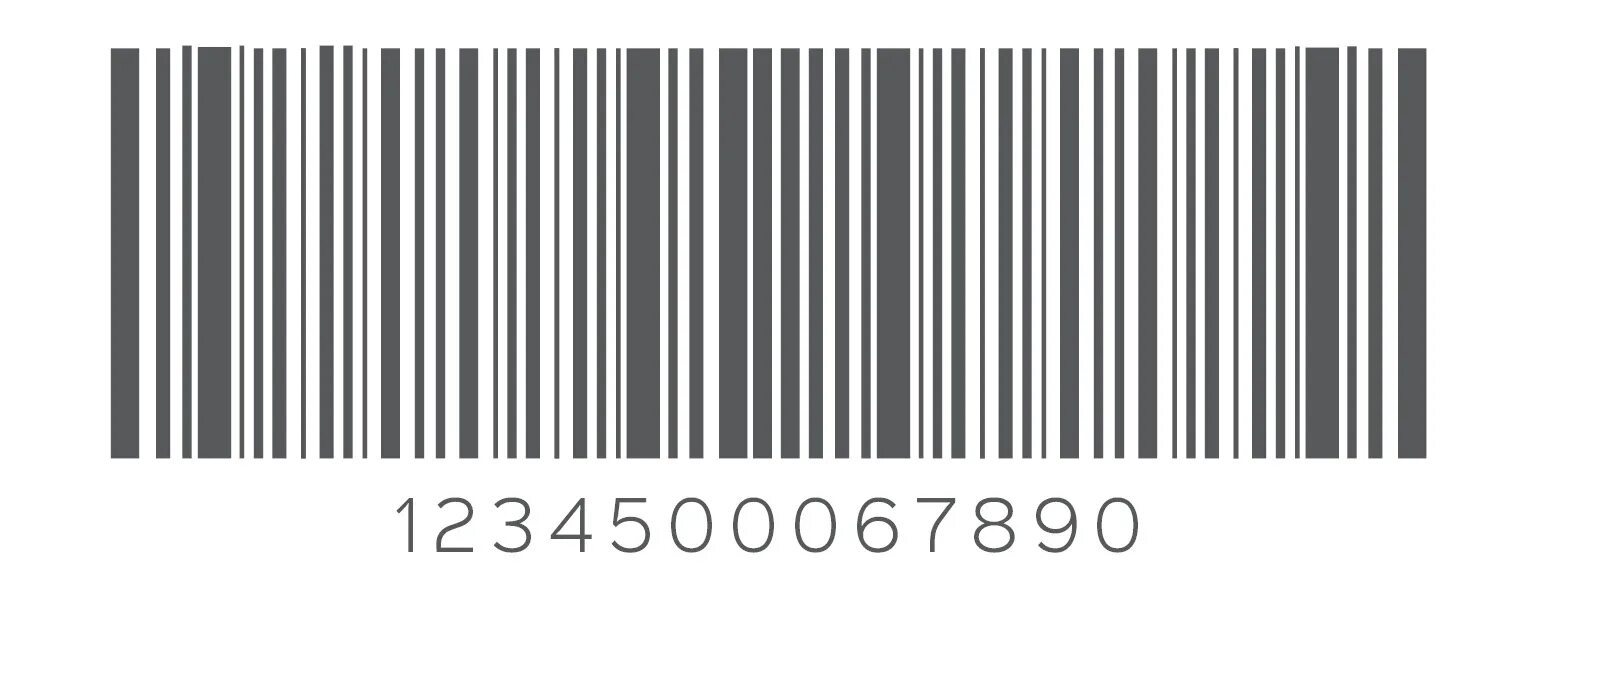 Barcode 5.3 1. Штрих код. Линейный штрих код. Рисунок штрих кода. Красивый штрих код.